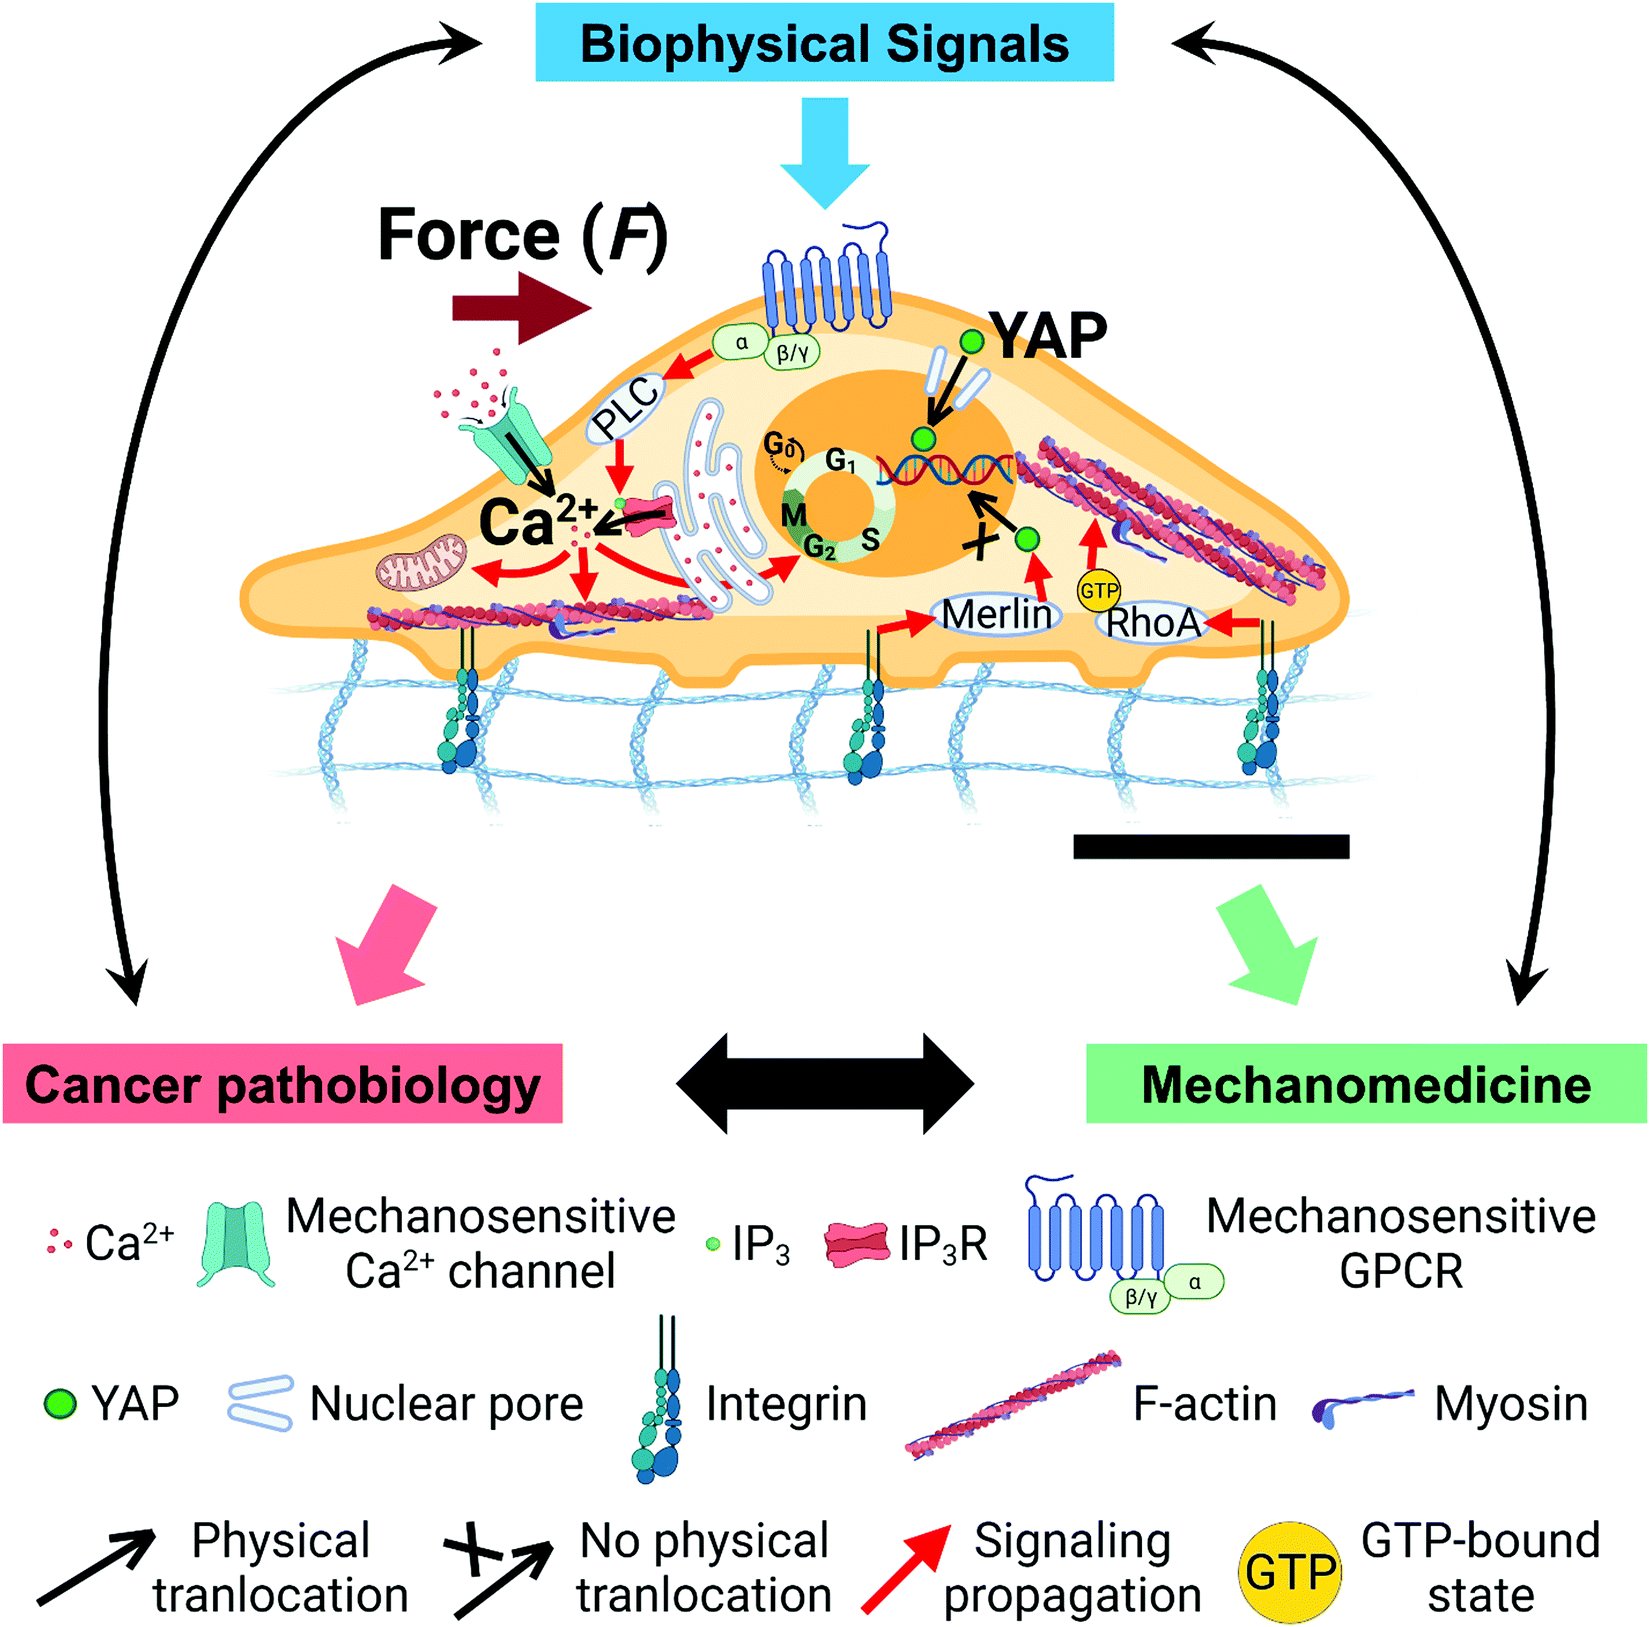 calcium and ip3 in signaling pathways